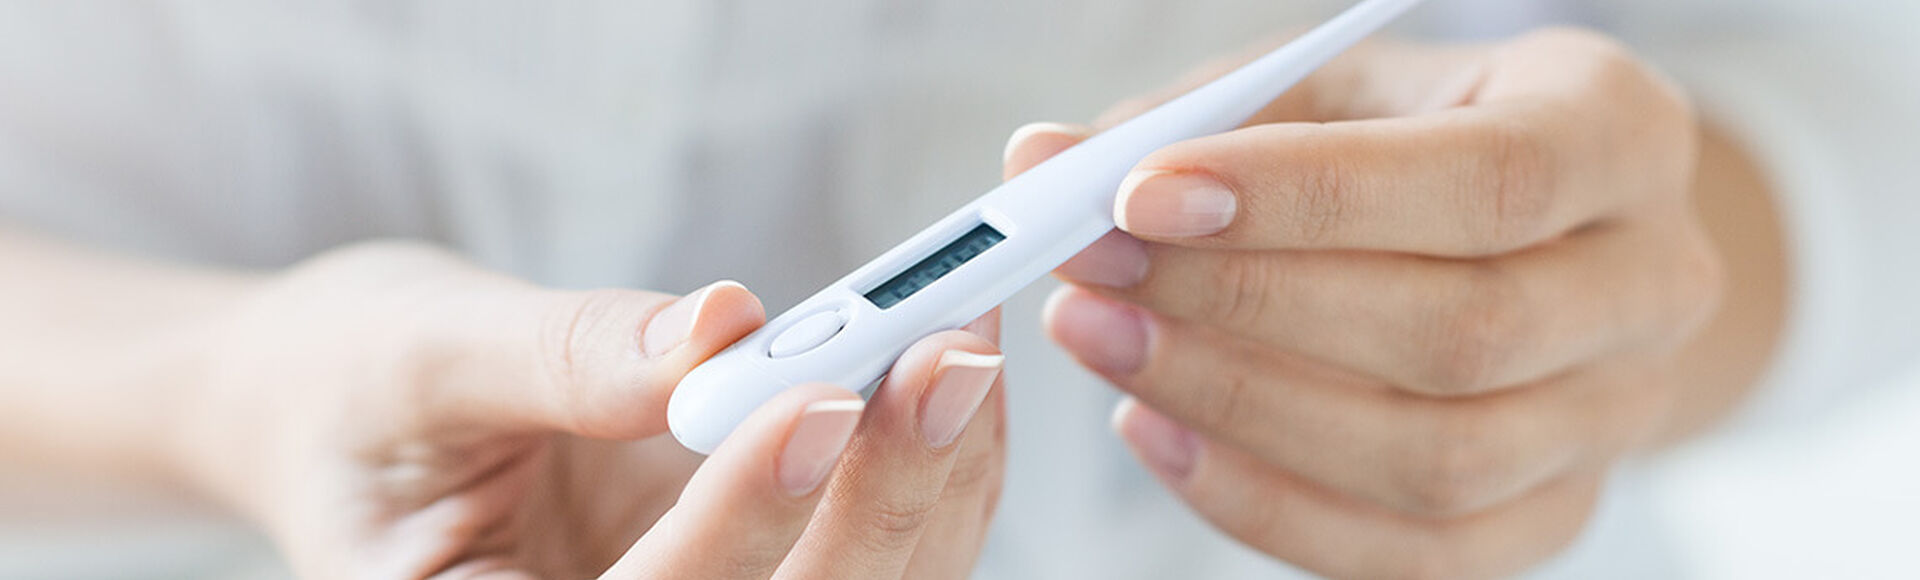 El feo se encuentra en la etapa de ovulación | by Huggies Argentina